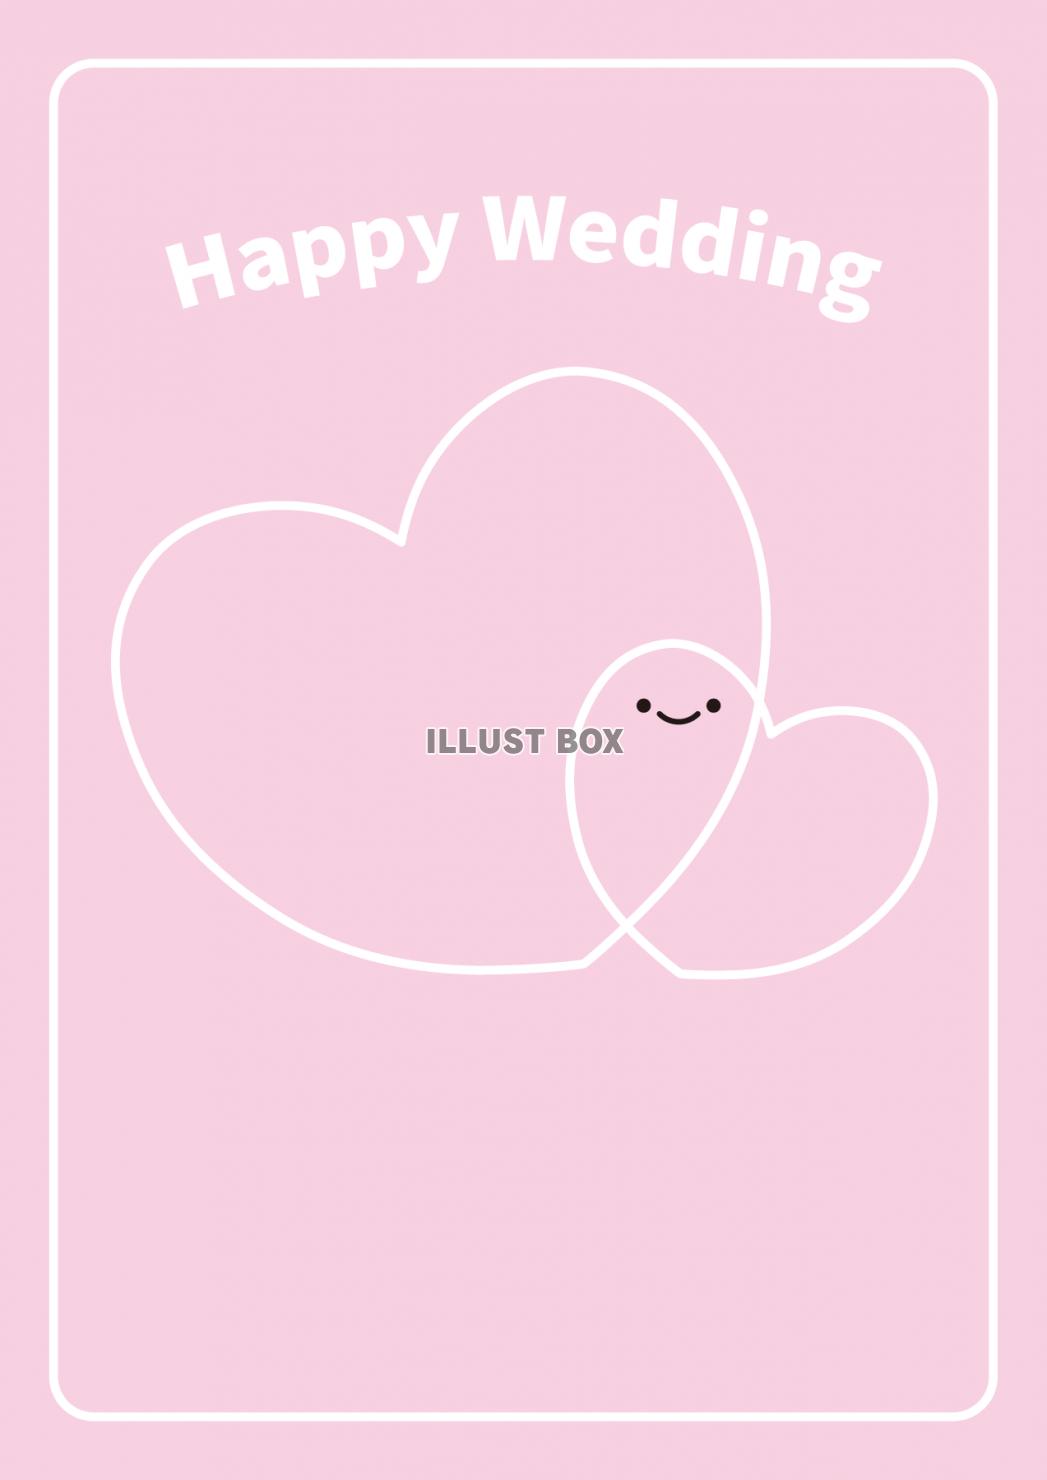 無料イラスト 22 グリーティングカード 結婚祝い ハート